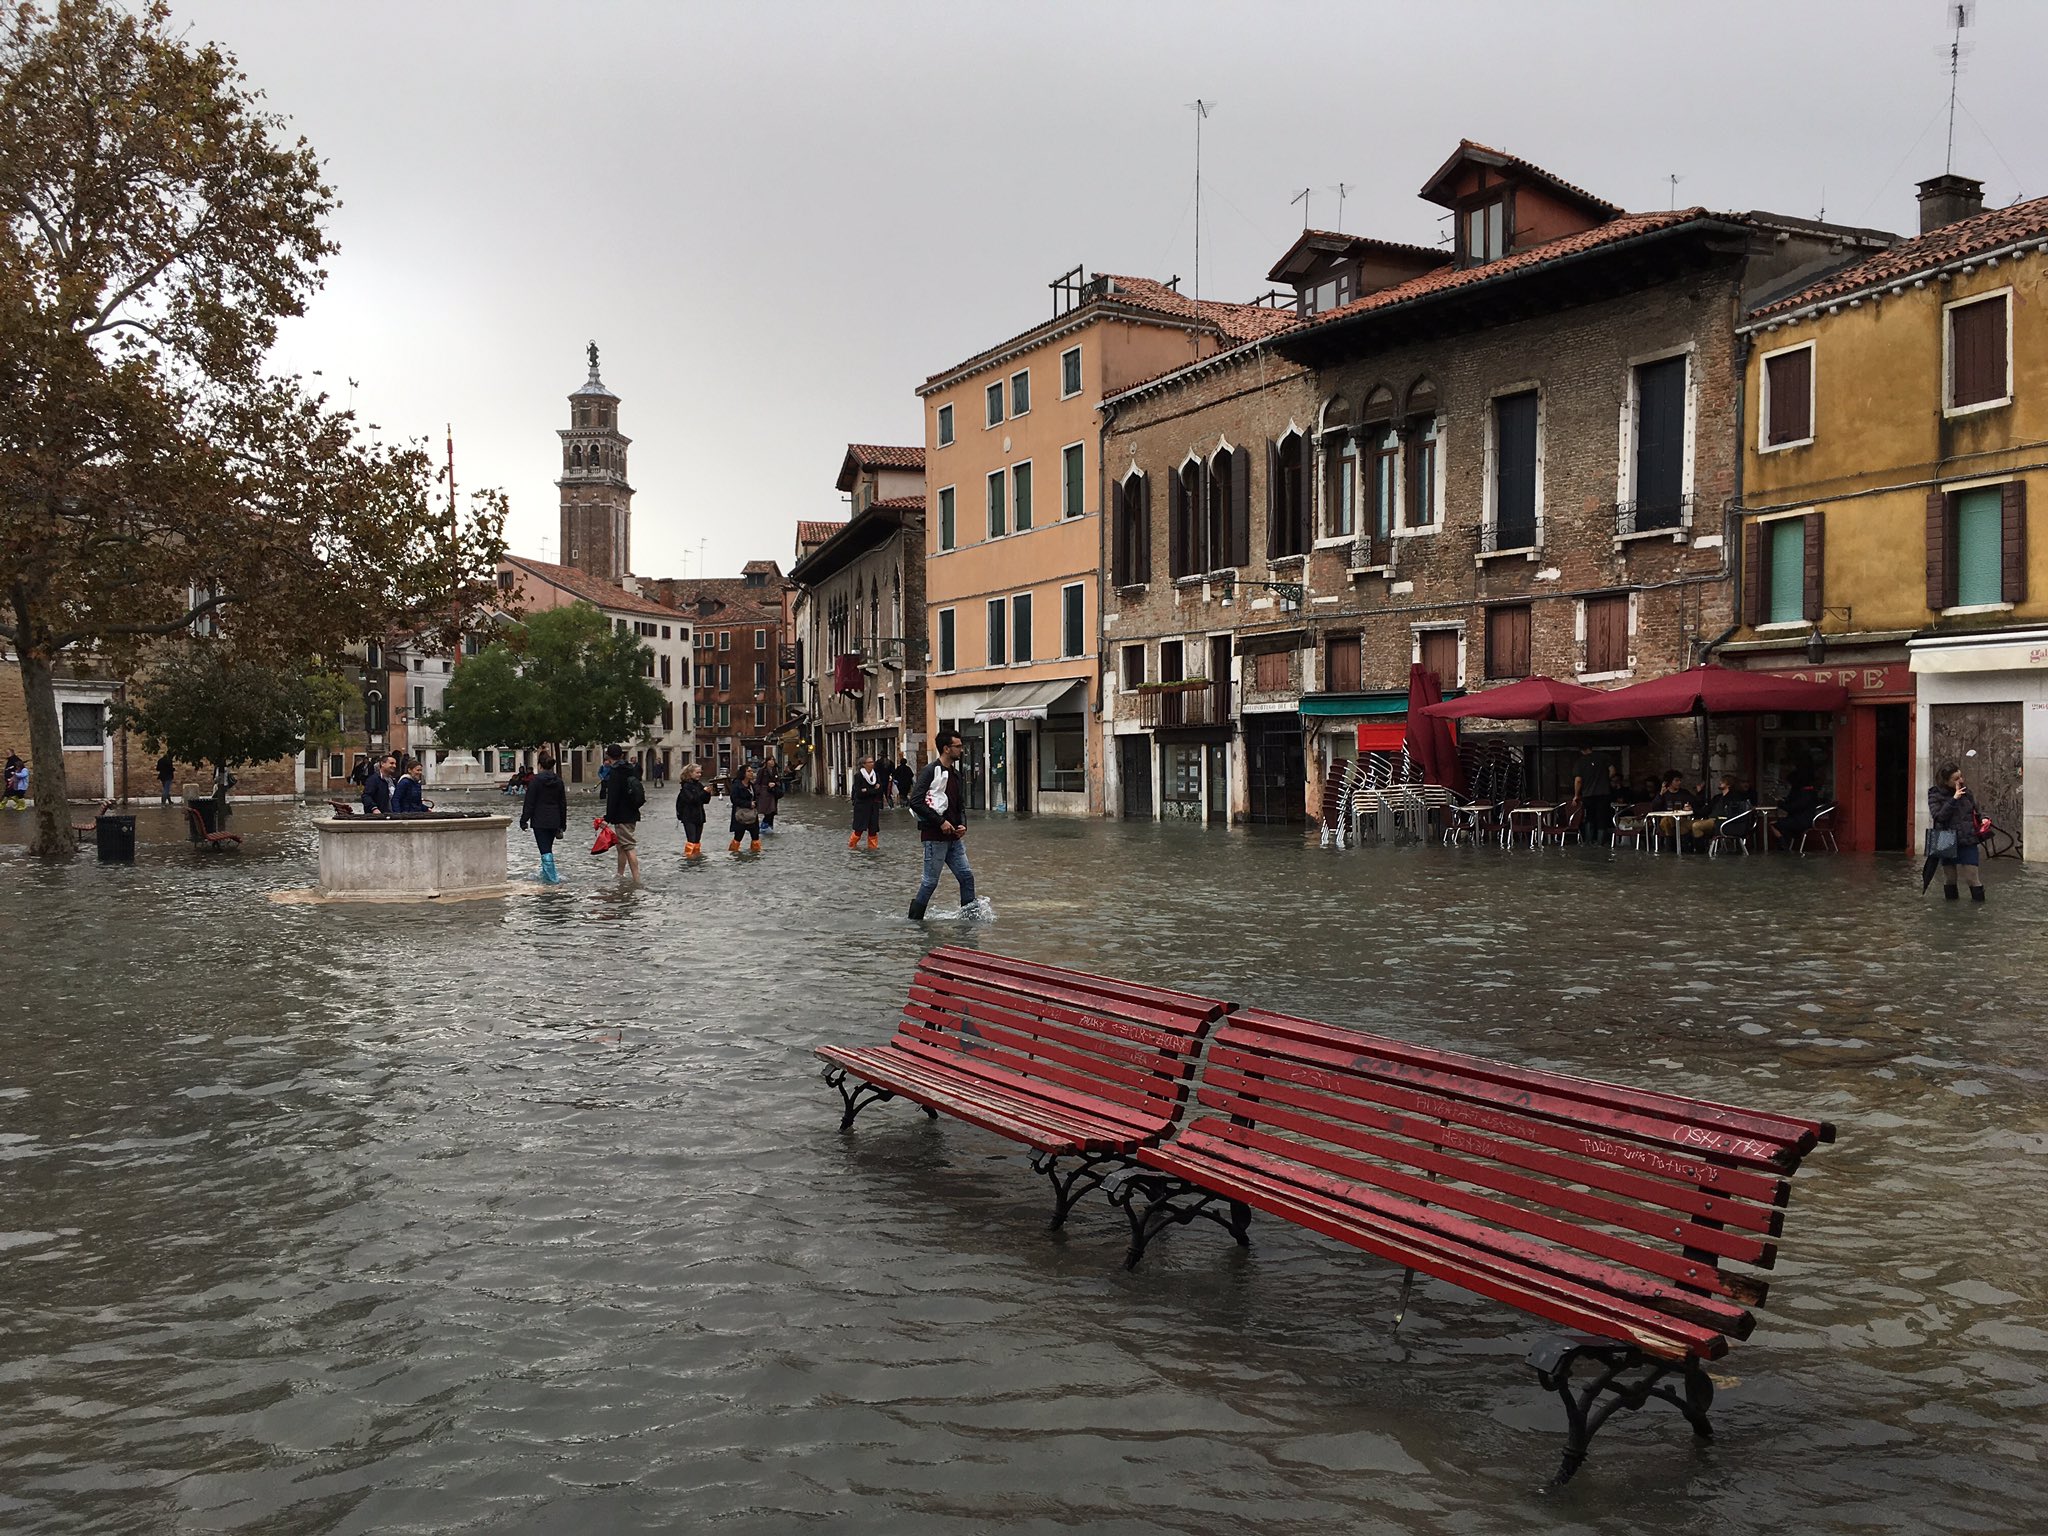 
Snažno nevrijeme koje je u ponedjeljak pogodilo Veneciju poplavilo je gotovo tri četvrtine grada i ovo je jedna od većih poplava u povijesti. Vjetrovi su razinu vode podigli za više od 1,5 metara. 